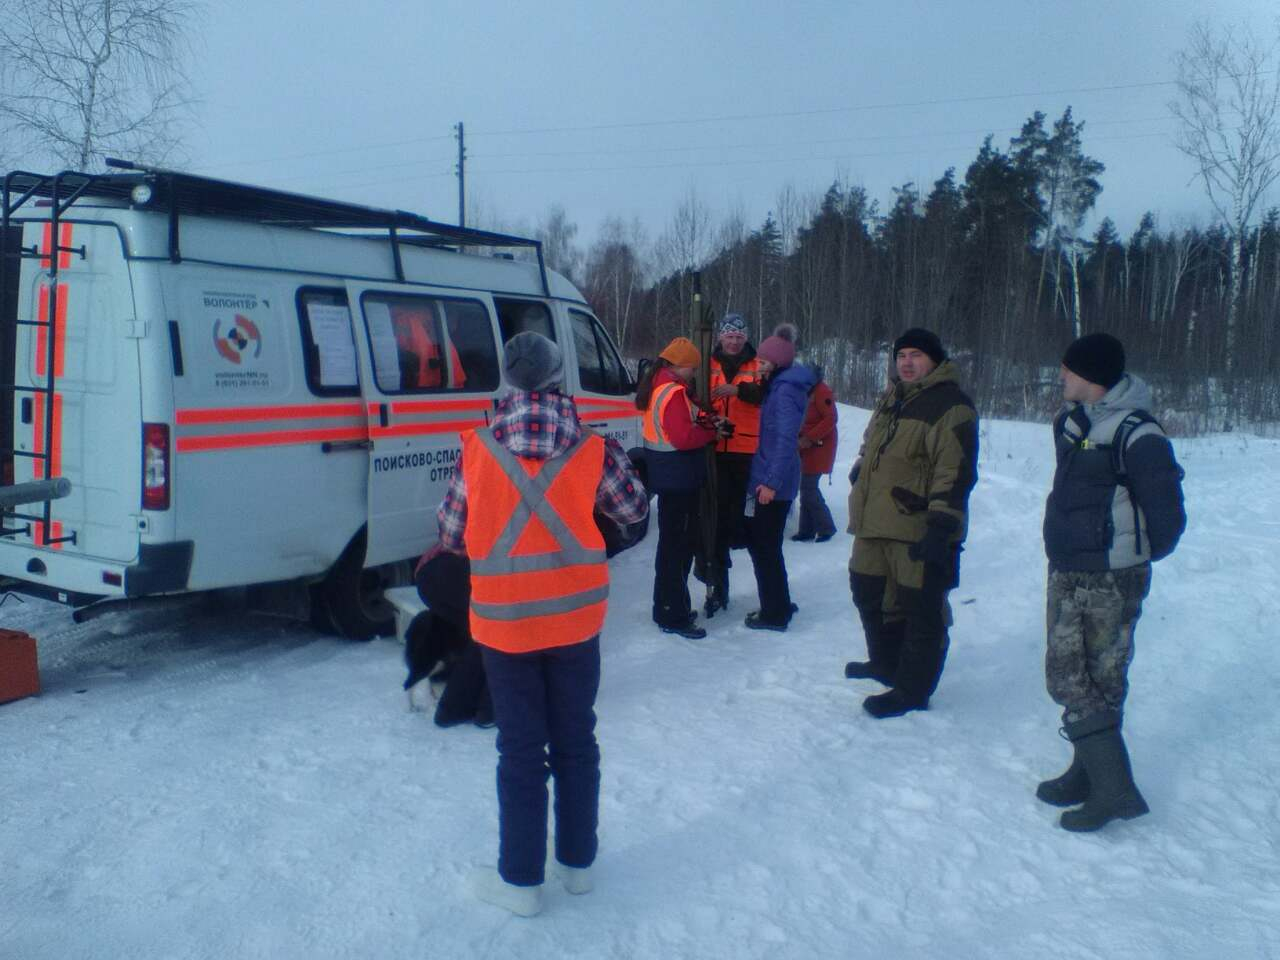 Волонтеры и добровольцы установят навигационные таблички в нижегородском лесу 10 марта